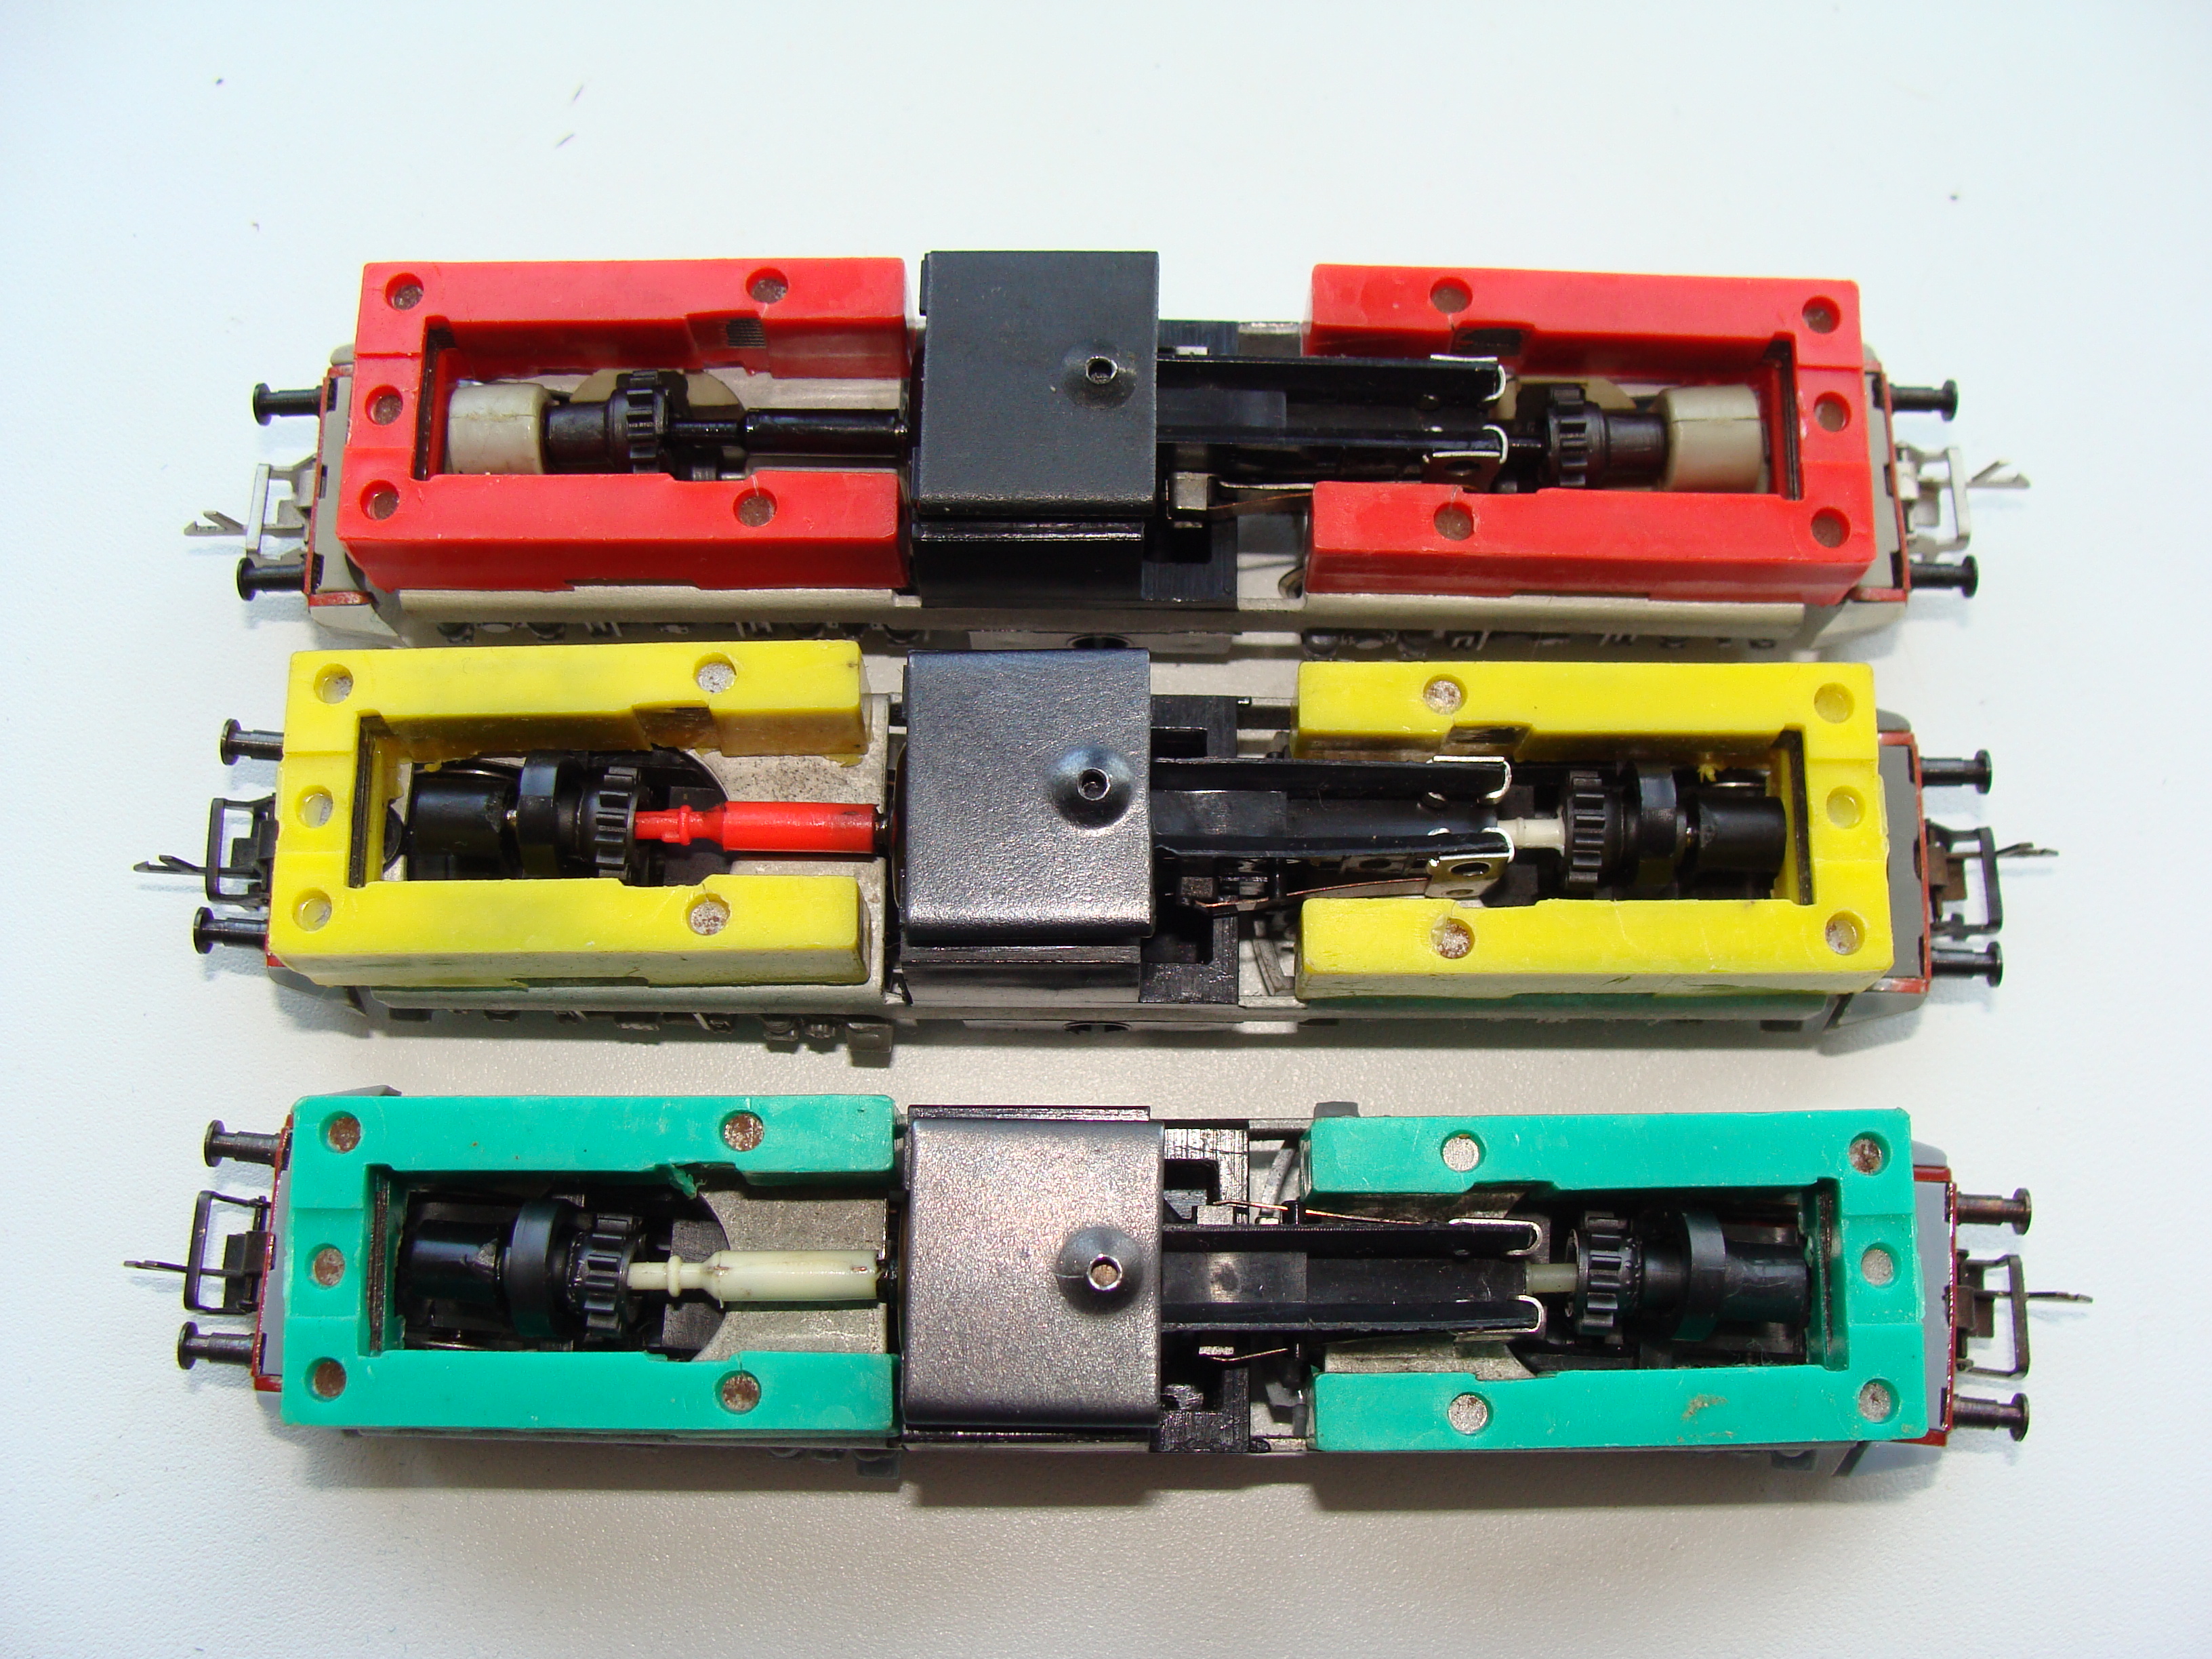 Ходовки модели Е499 с балластными грузами разных цветов